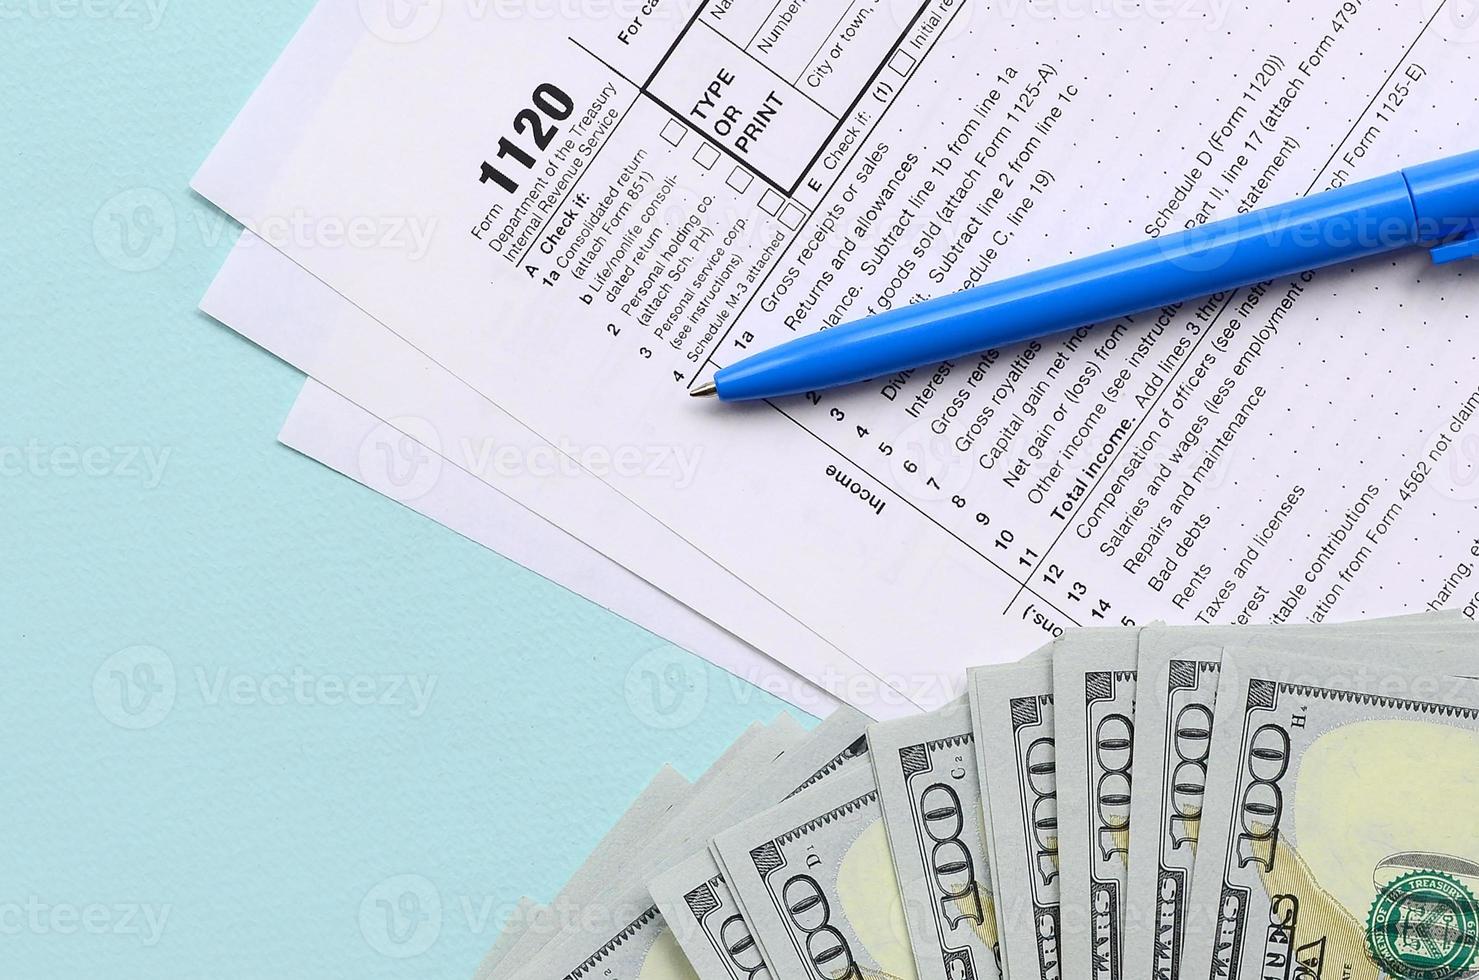 El formulario de impuestos 1120 se encuentra cerca de los billetes de cien dólares y el bolígrafo azul sobre un fondo azul claro. declaración de impuestos sobre la renta de la corporación estadounidense foto